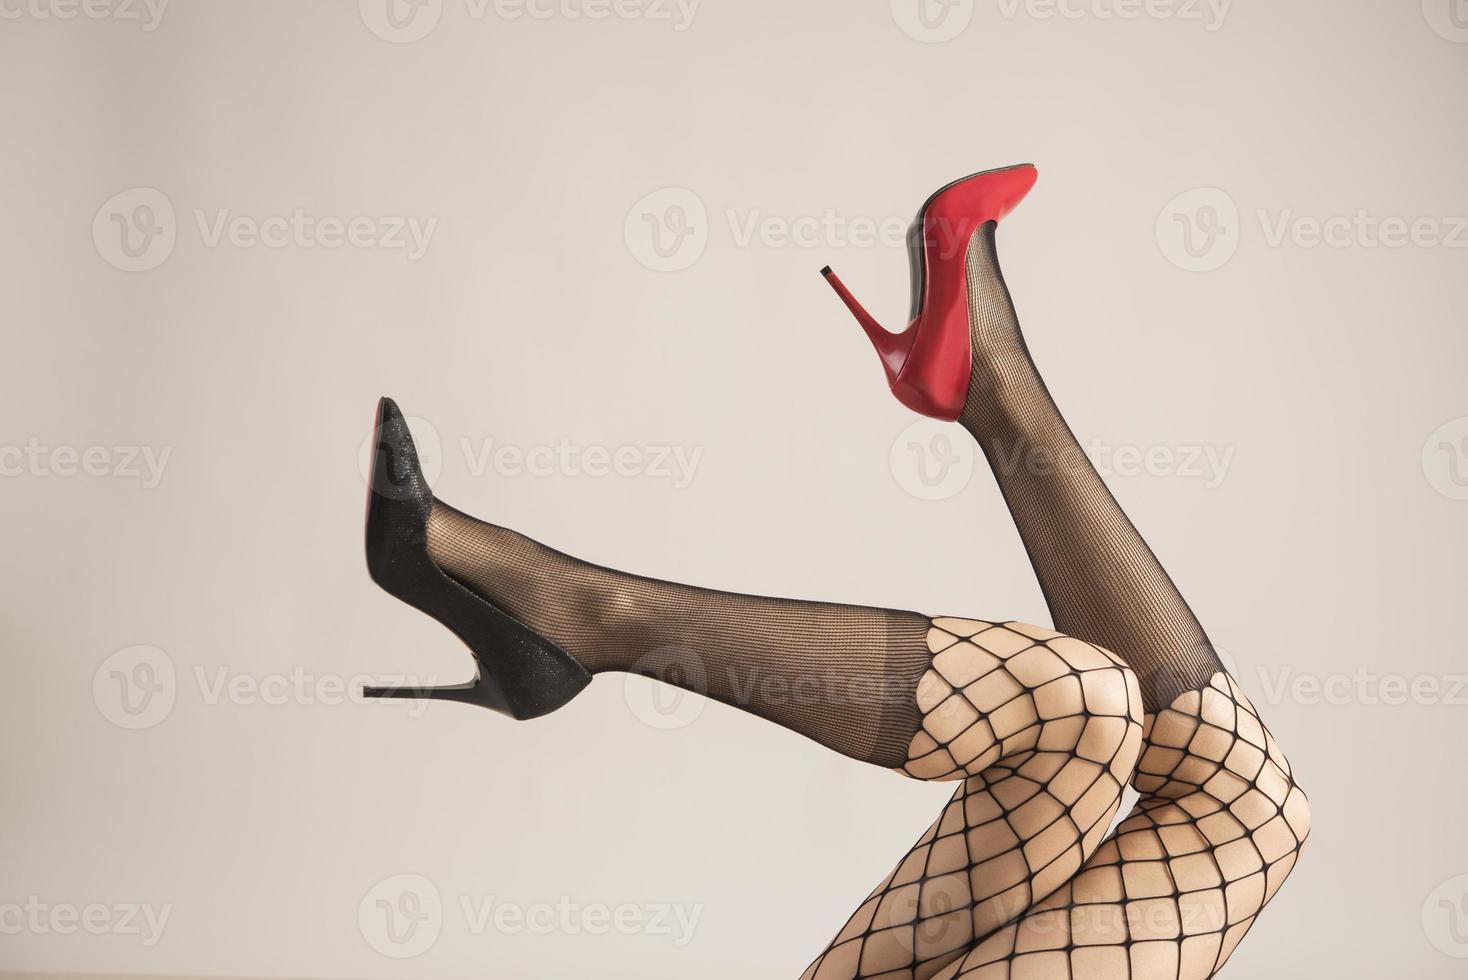 pernas femininas com diferentes tipos de salto alto foto